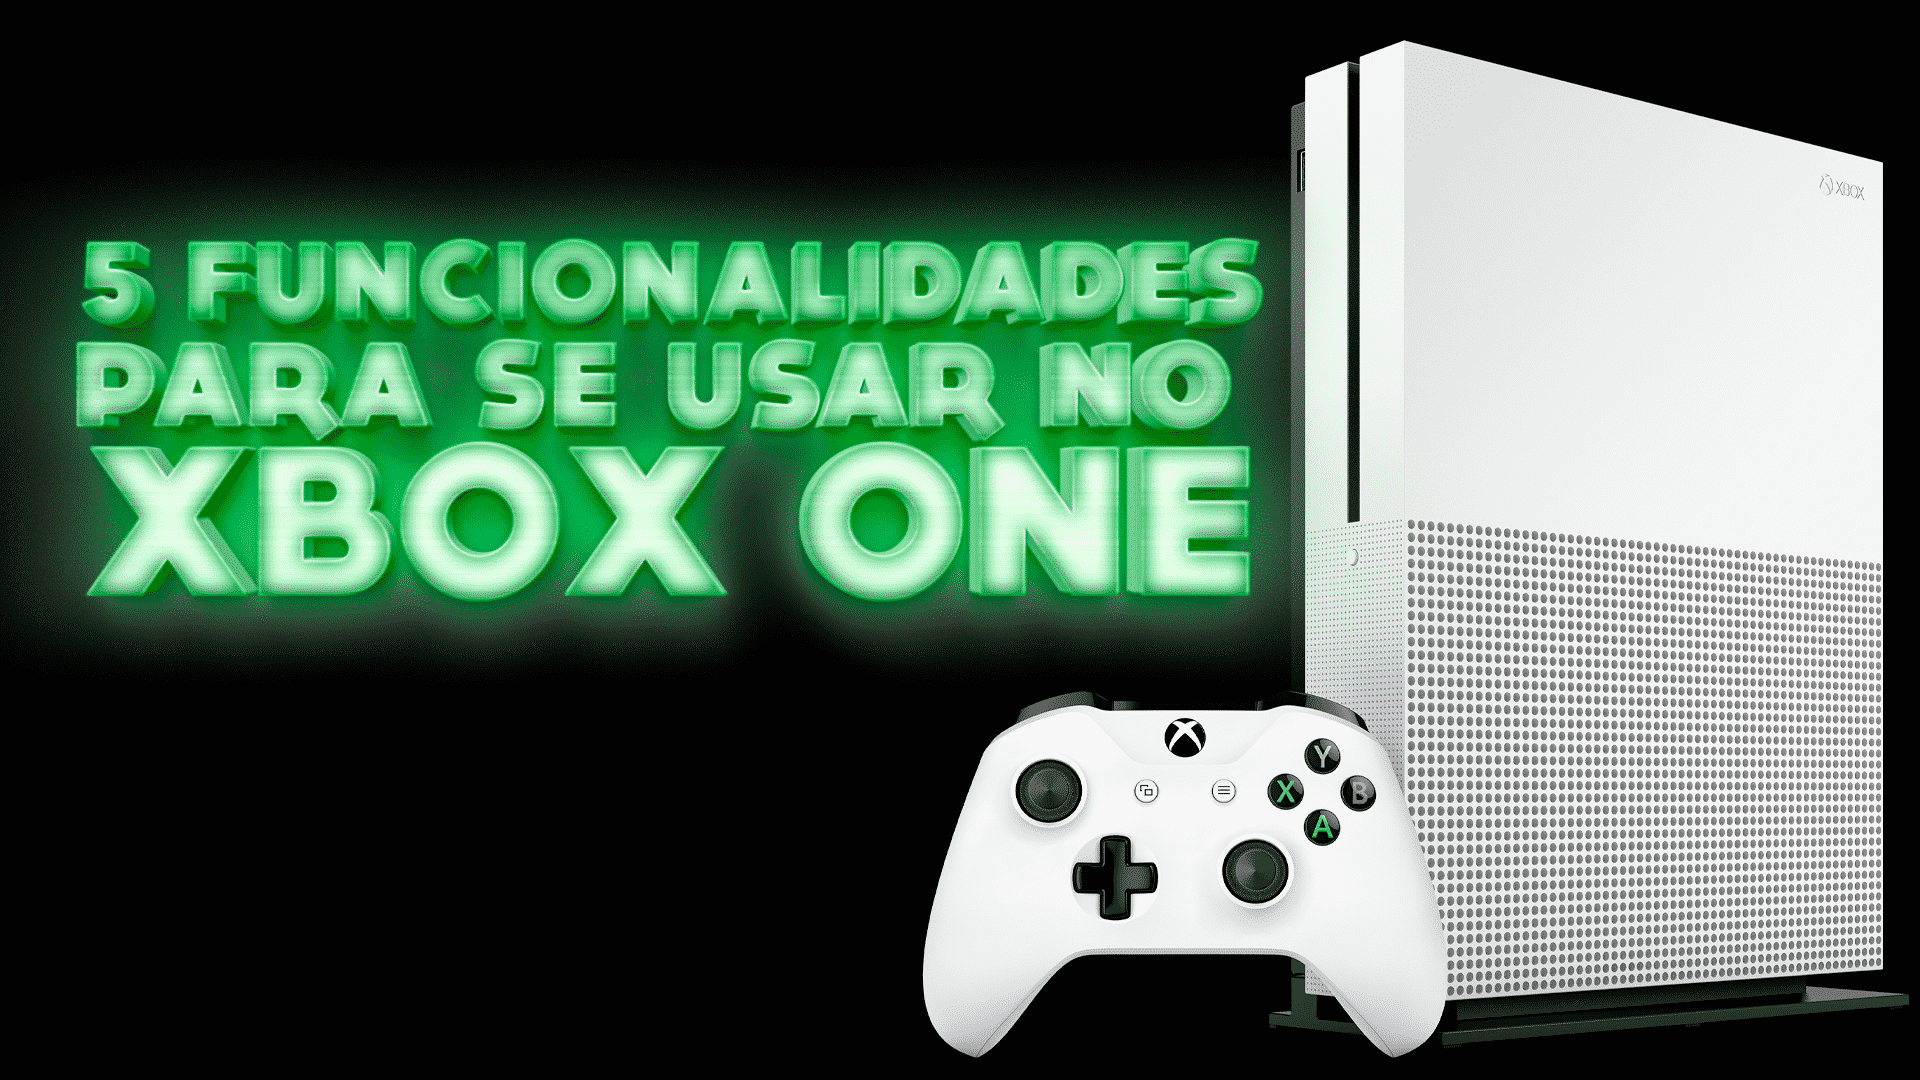 Xbox 360 Brasil  Novos jogos no canal de telegram pra baixar pro